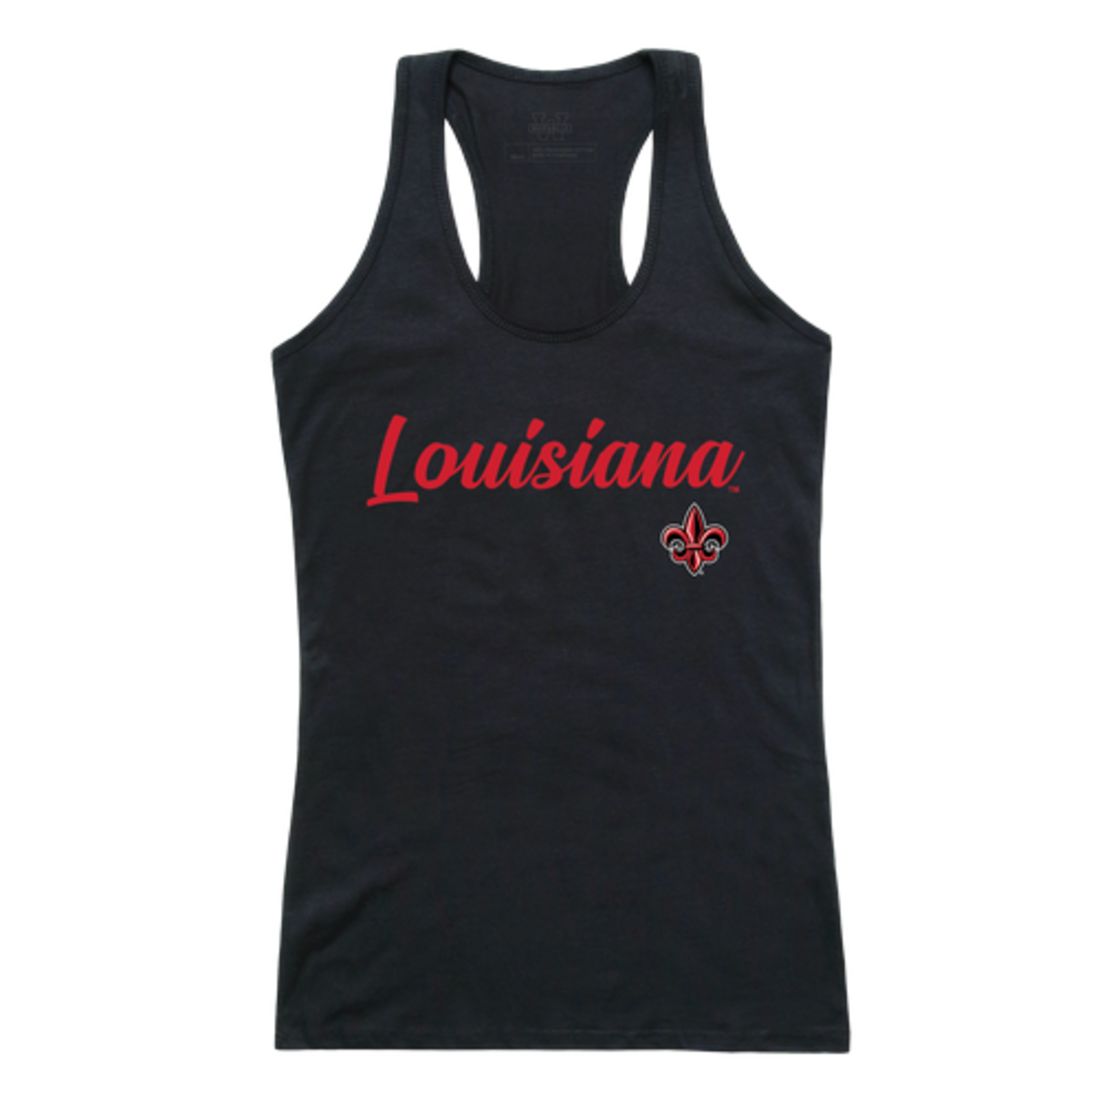 University of Louisiana at Lafayette T-Shirts, University of